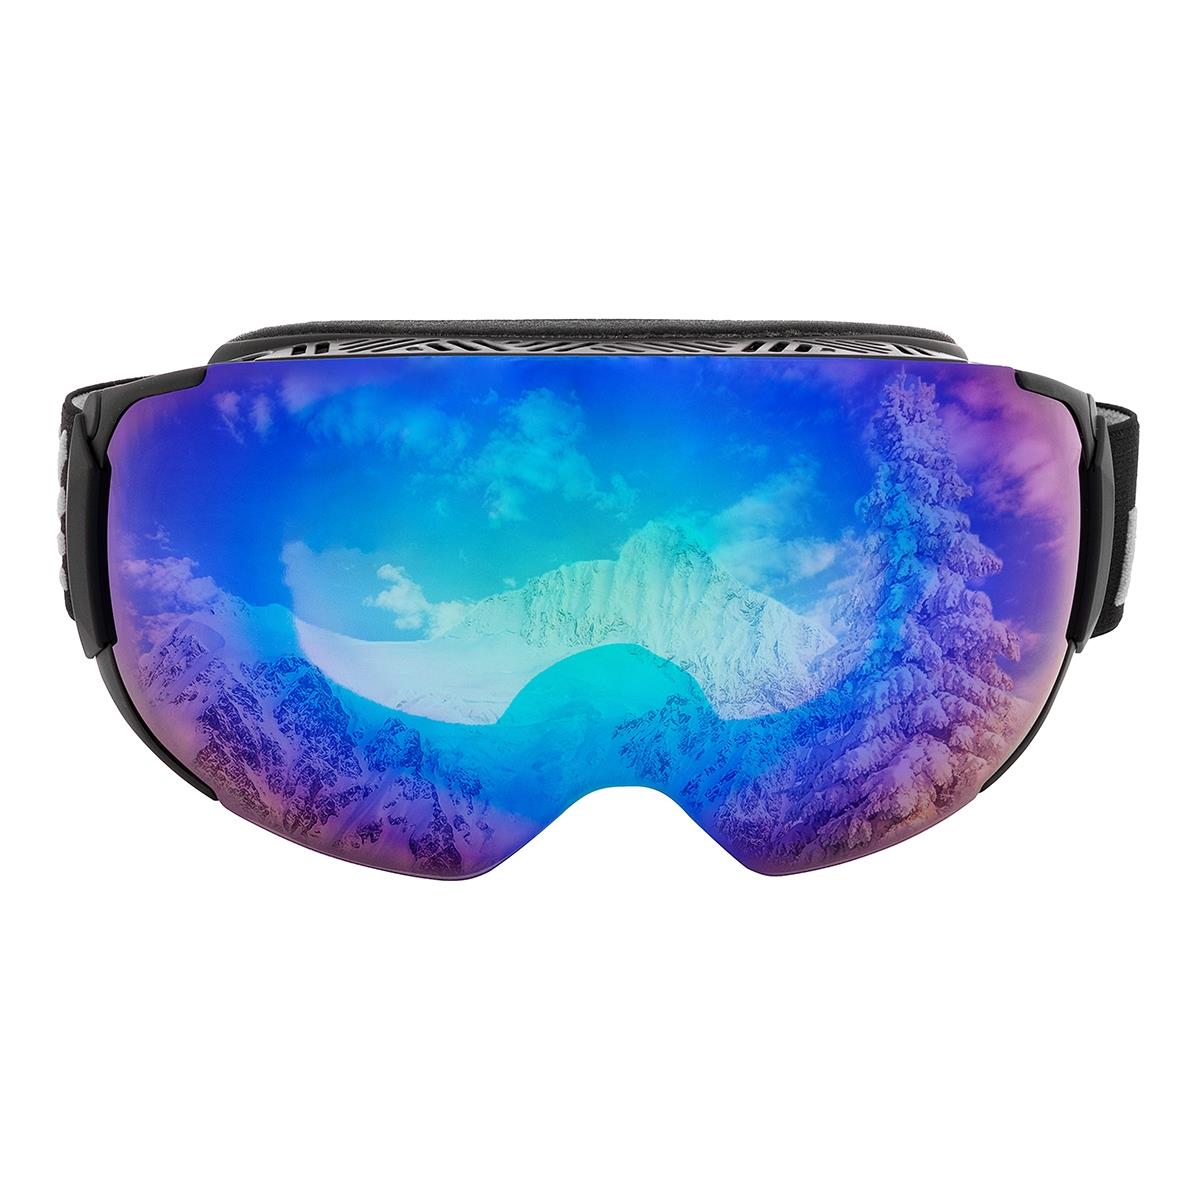 Очки горнолыжные HS-HX-019 Helios очки для плавания взрослые uv защита